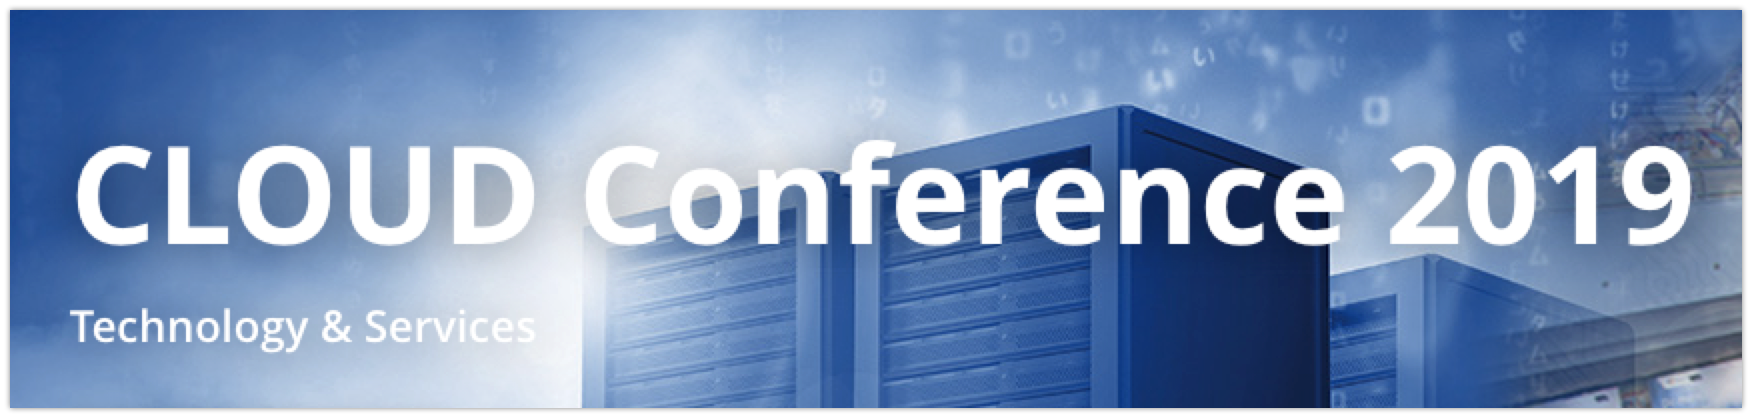 Cloud Conferences 2019